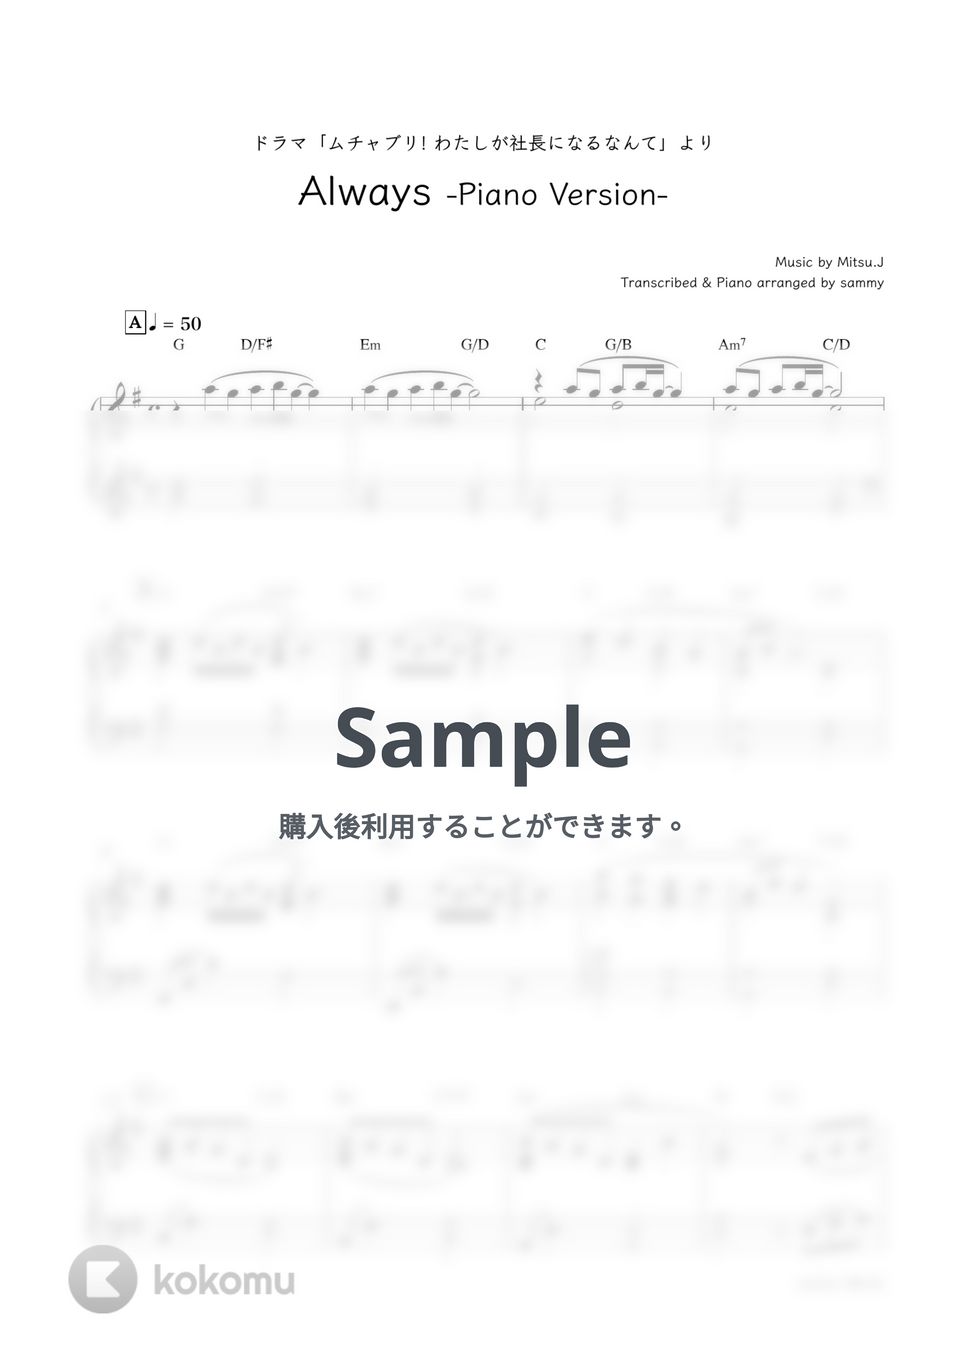 ENHYPEN - Always -Piano Version- (ドラマ『ムチャブリ! わたしが社長になるなんて』より) by sammy